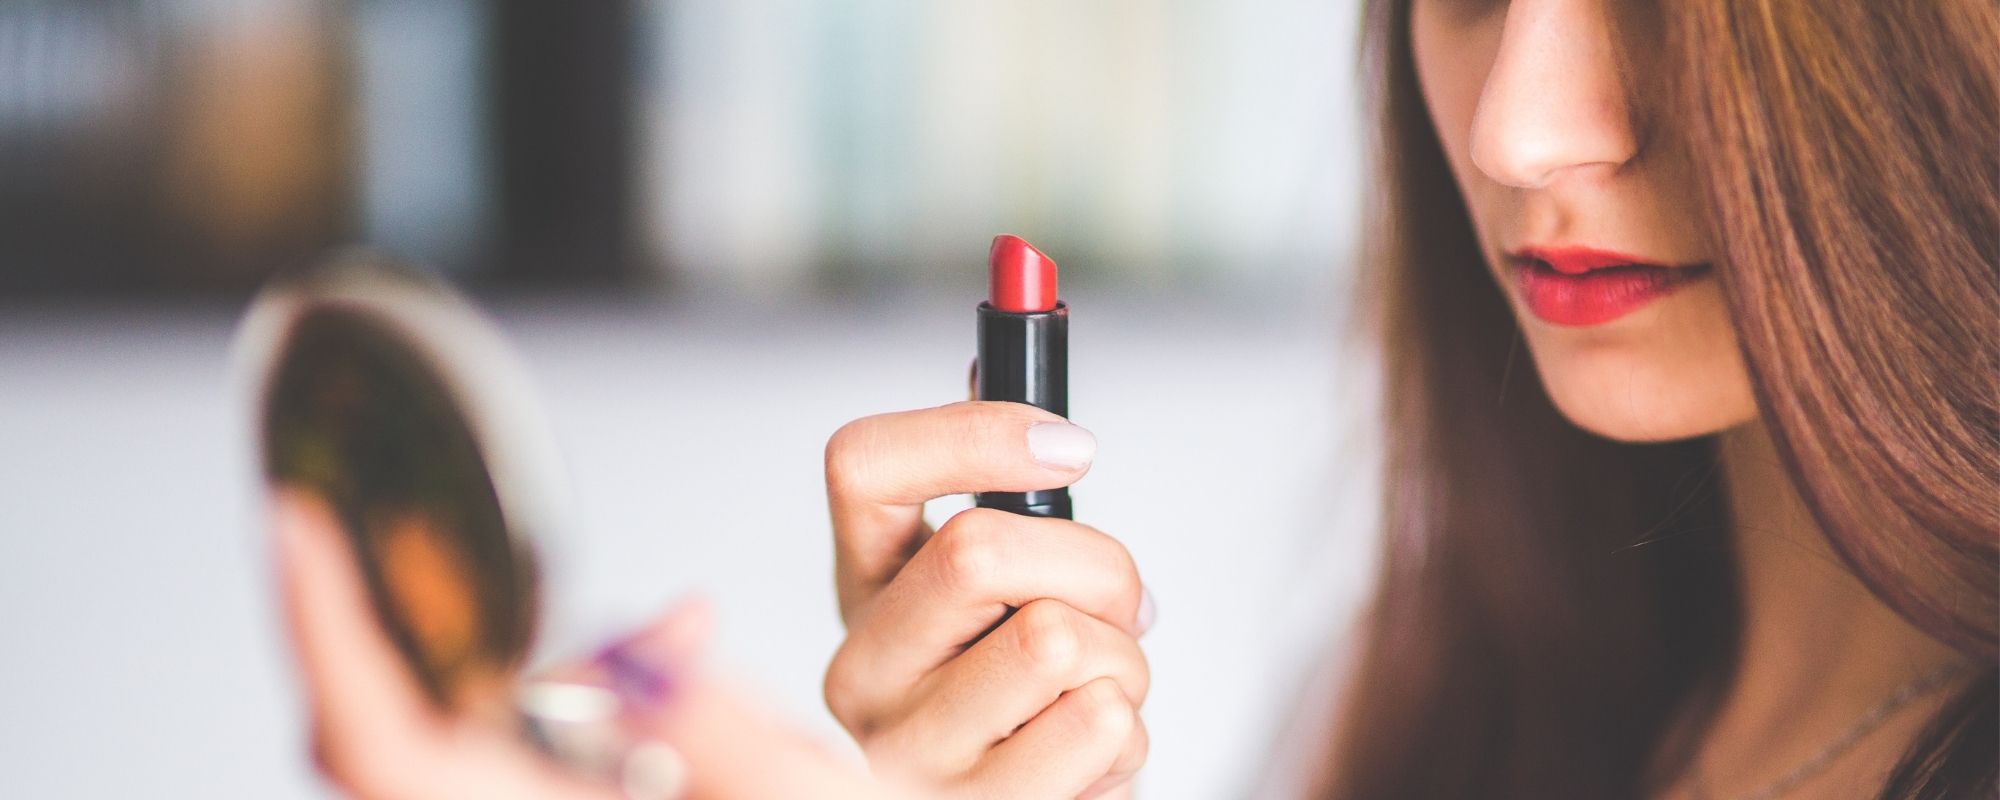 Une femme qui tient un rouge à lèvres de couleur rouge dans la main et se regarde dans le miroir